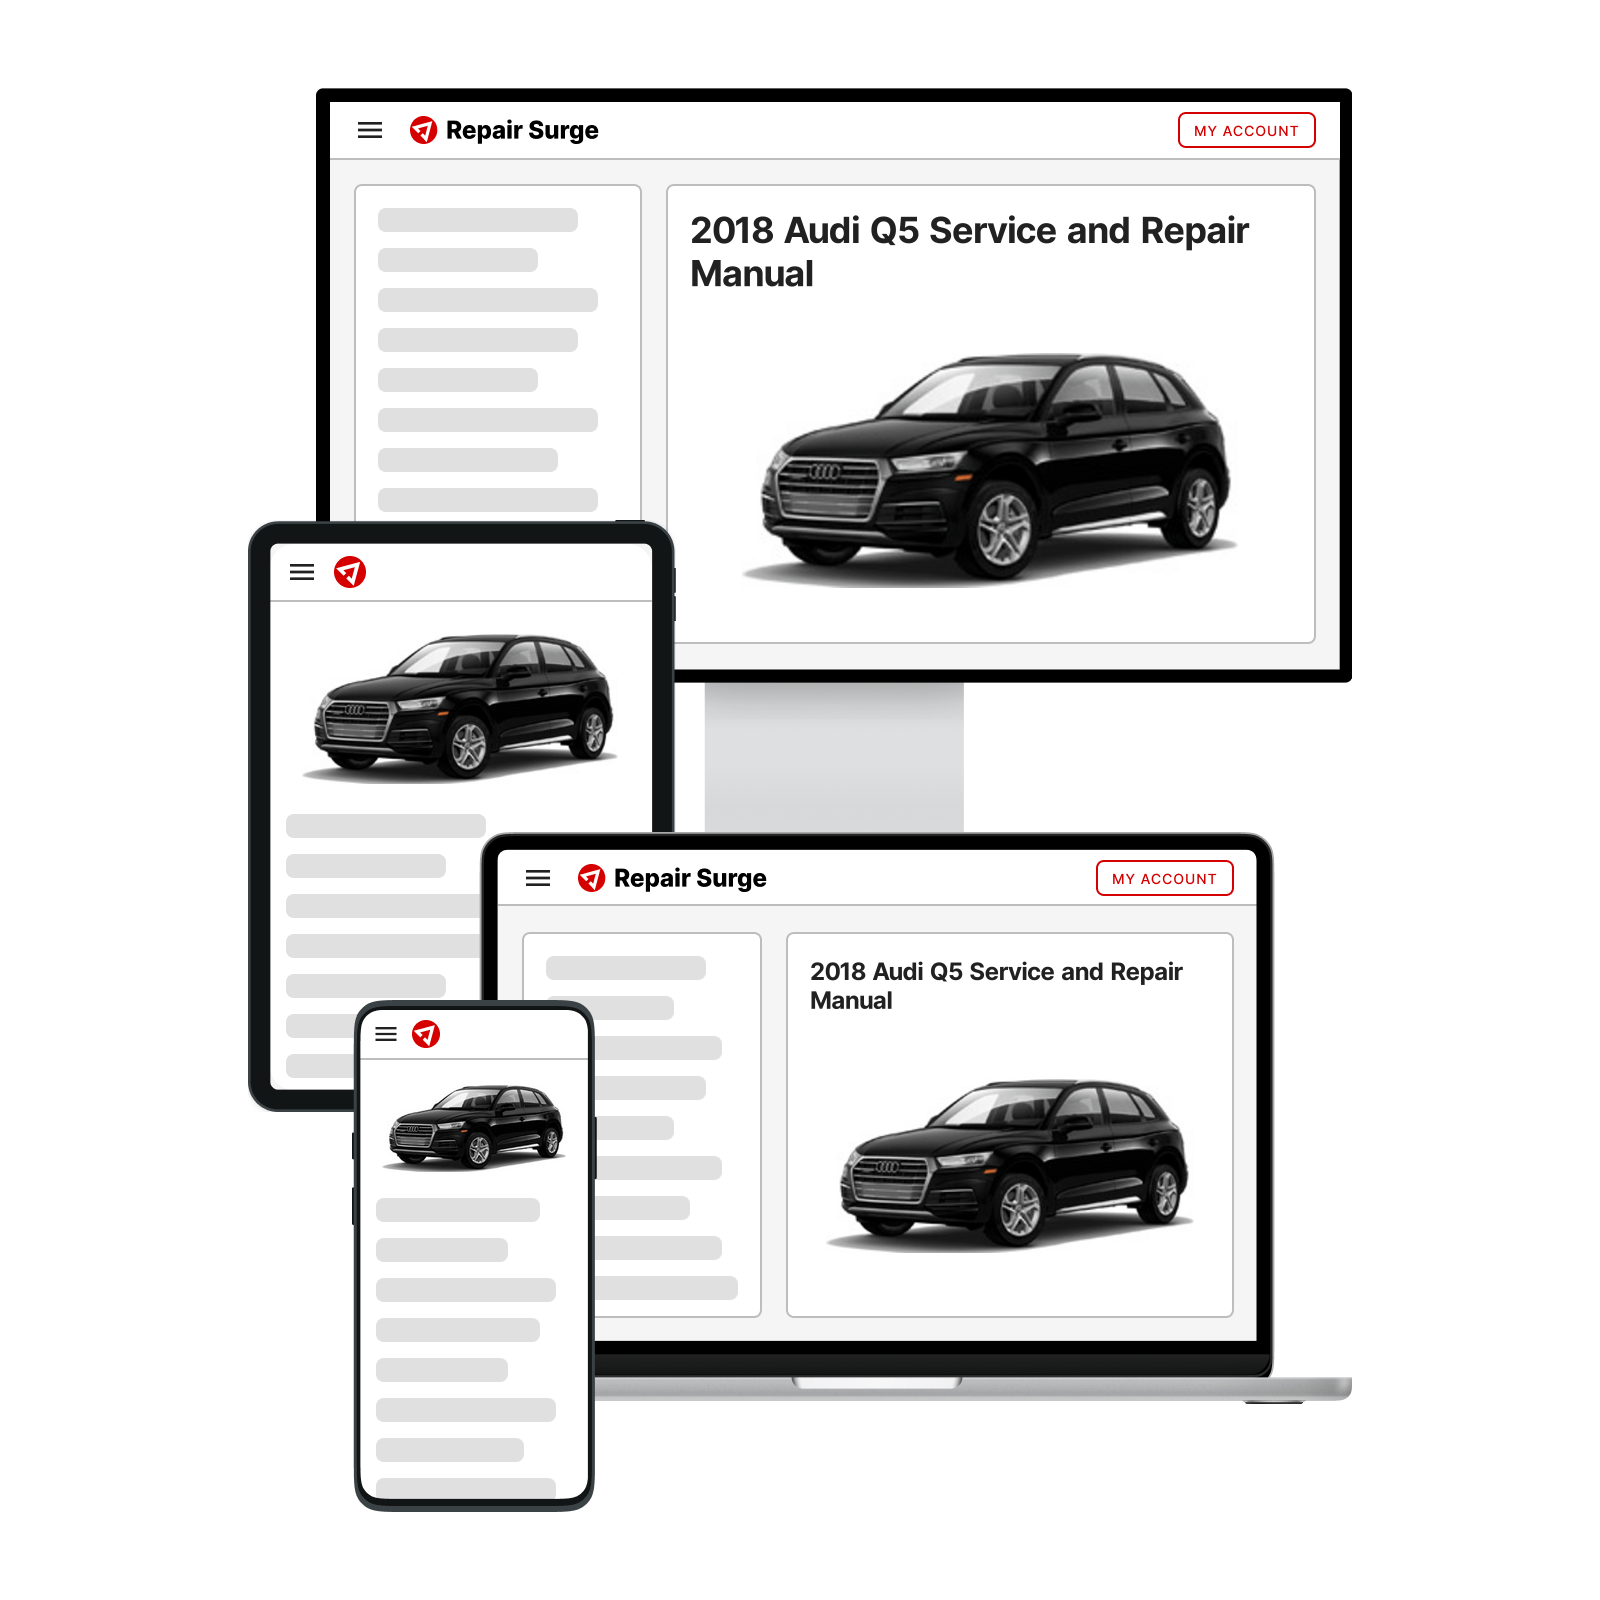 2018 Audi Q5 service and repair manual hero image